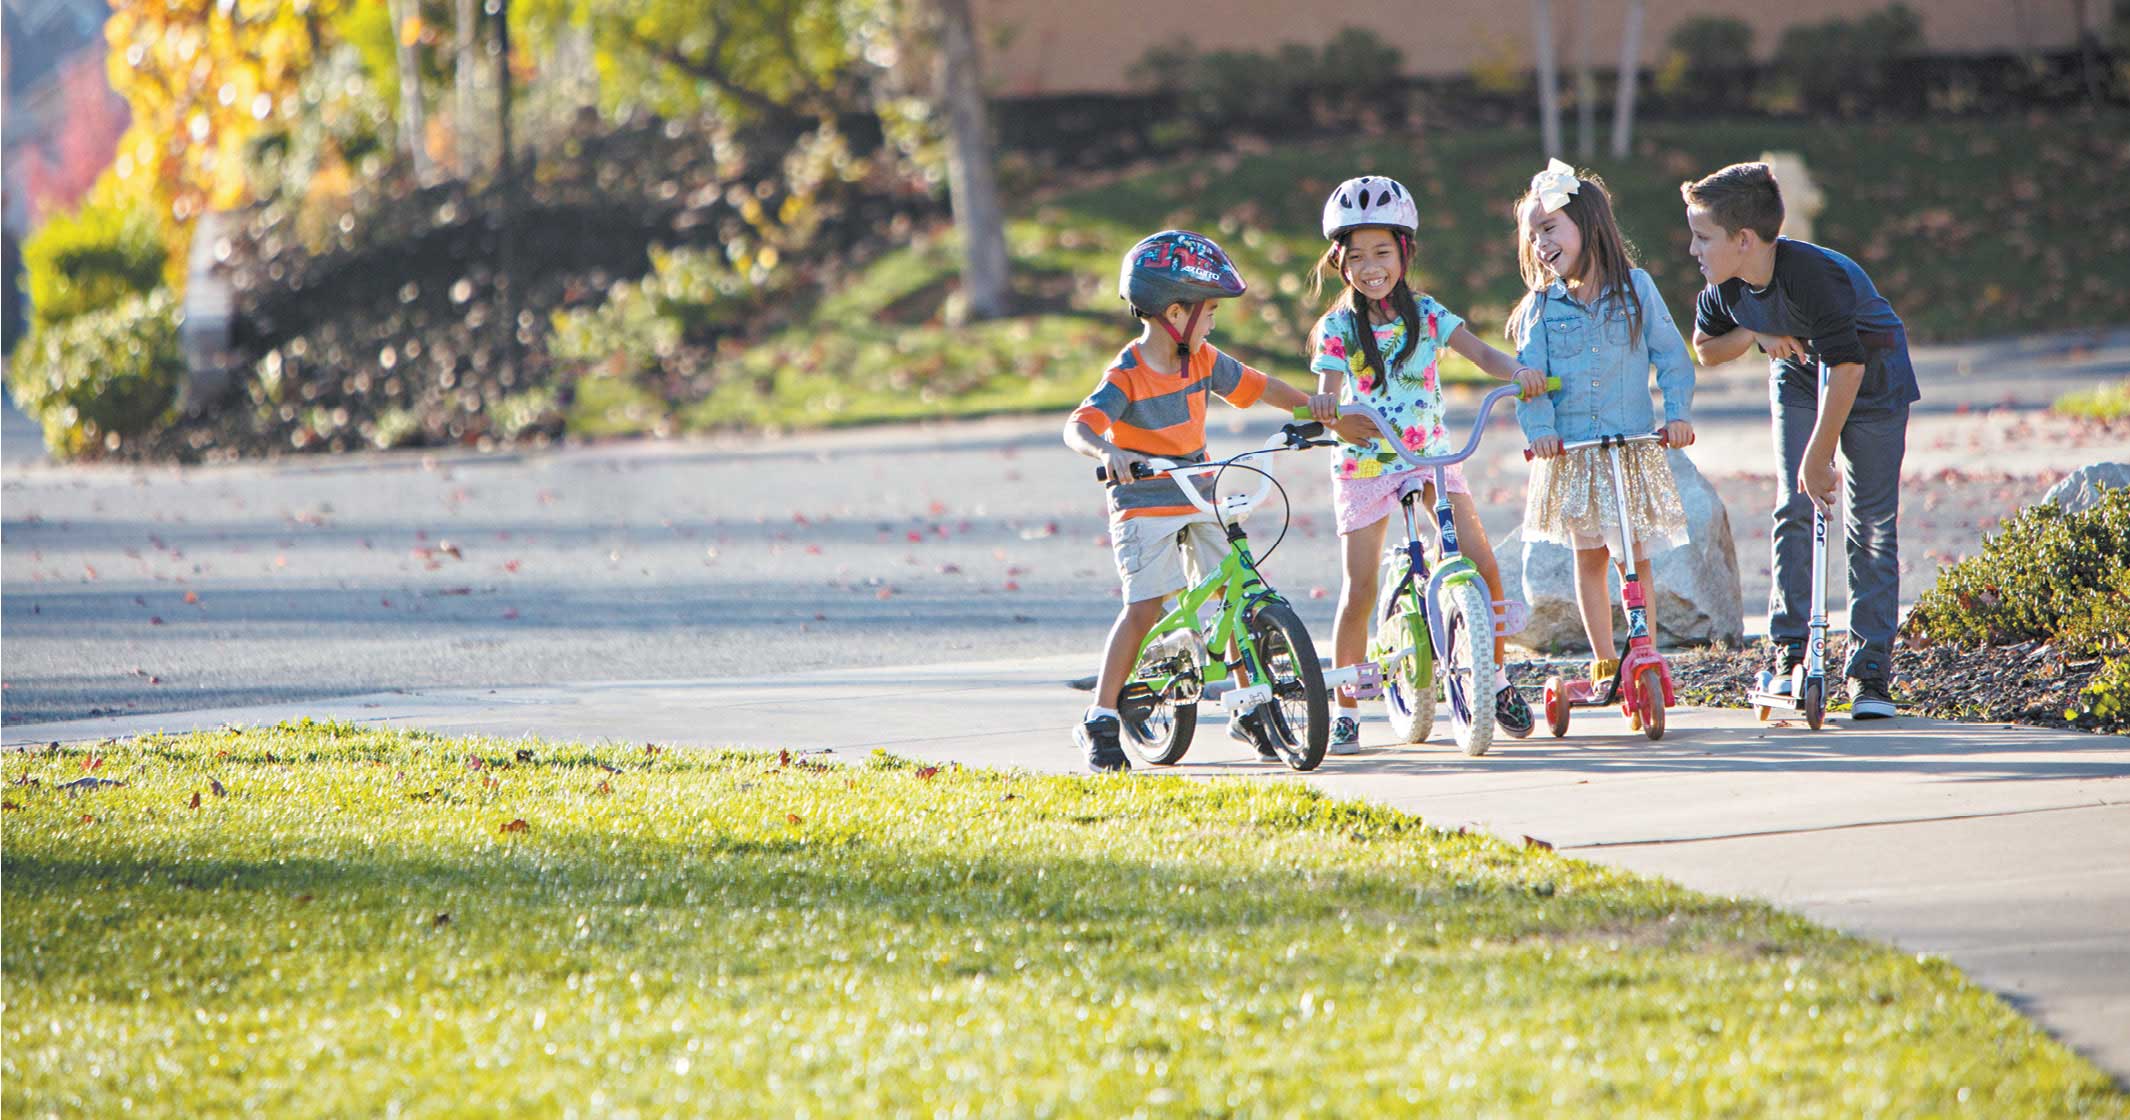 Kids on Bikes Image 